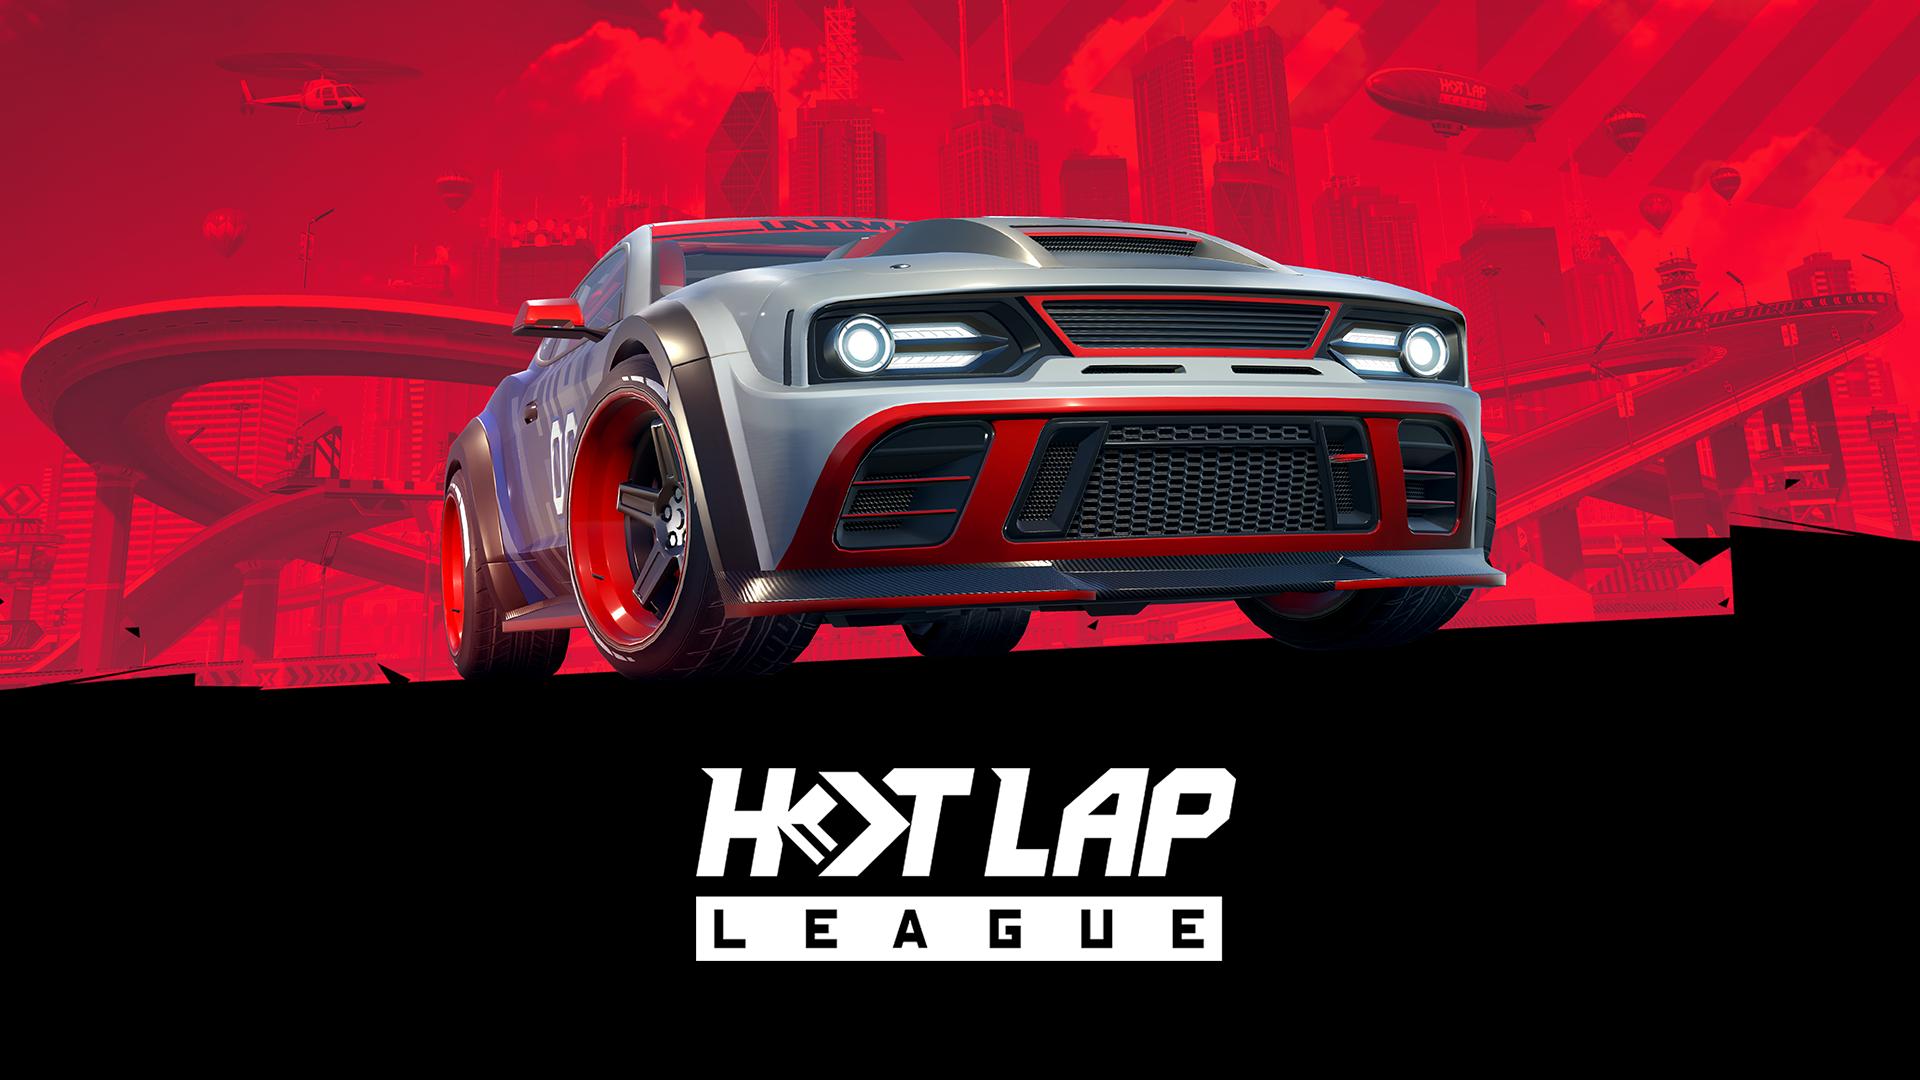 Hot lap league